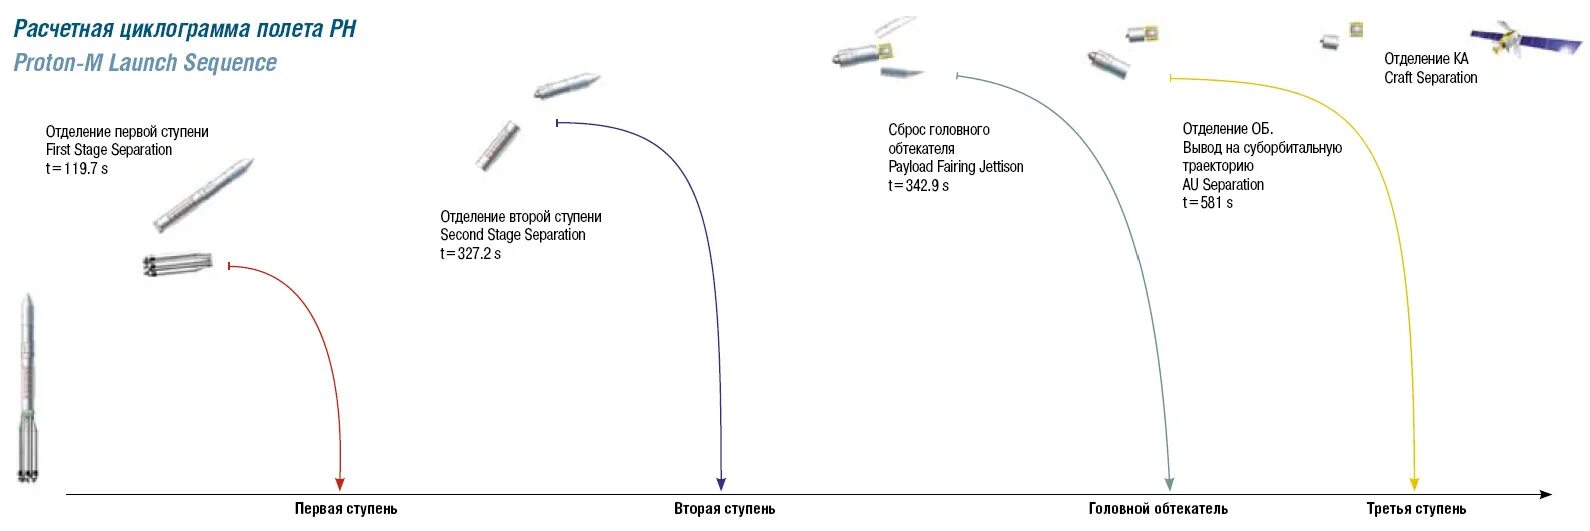 Циклограмма полета РН Протон. Циклограмма полета ракеты Протон. Схема полета ракеты Протон. Ракета Протон Траектория.